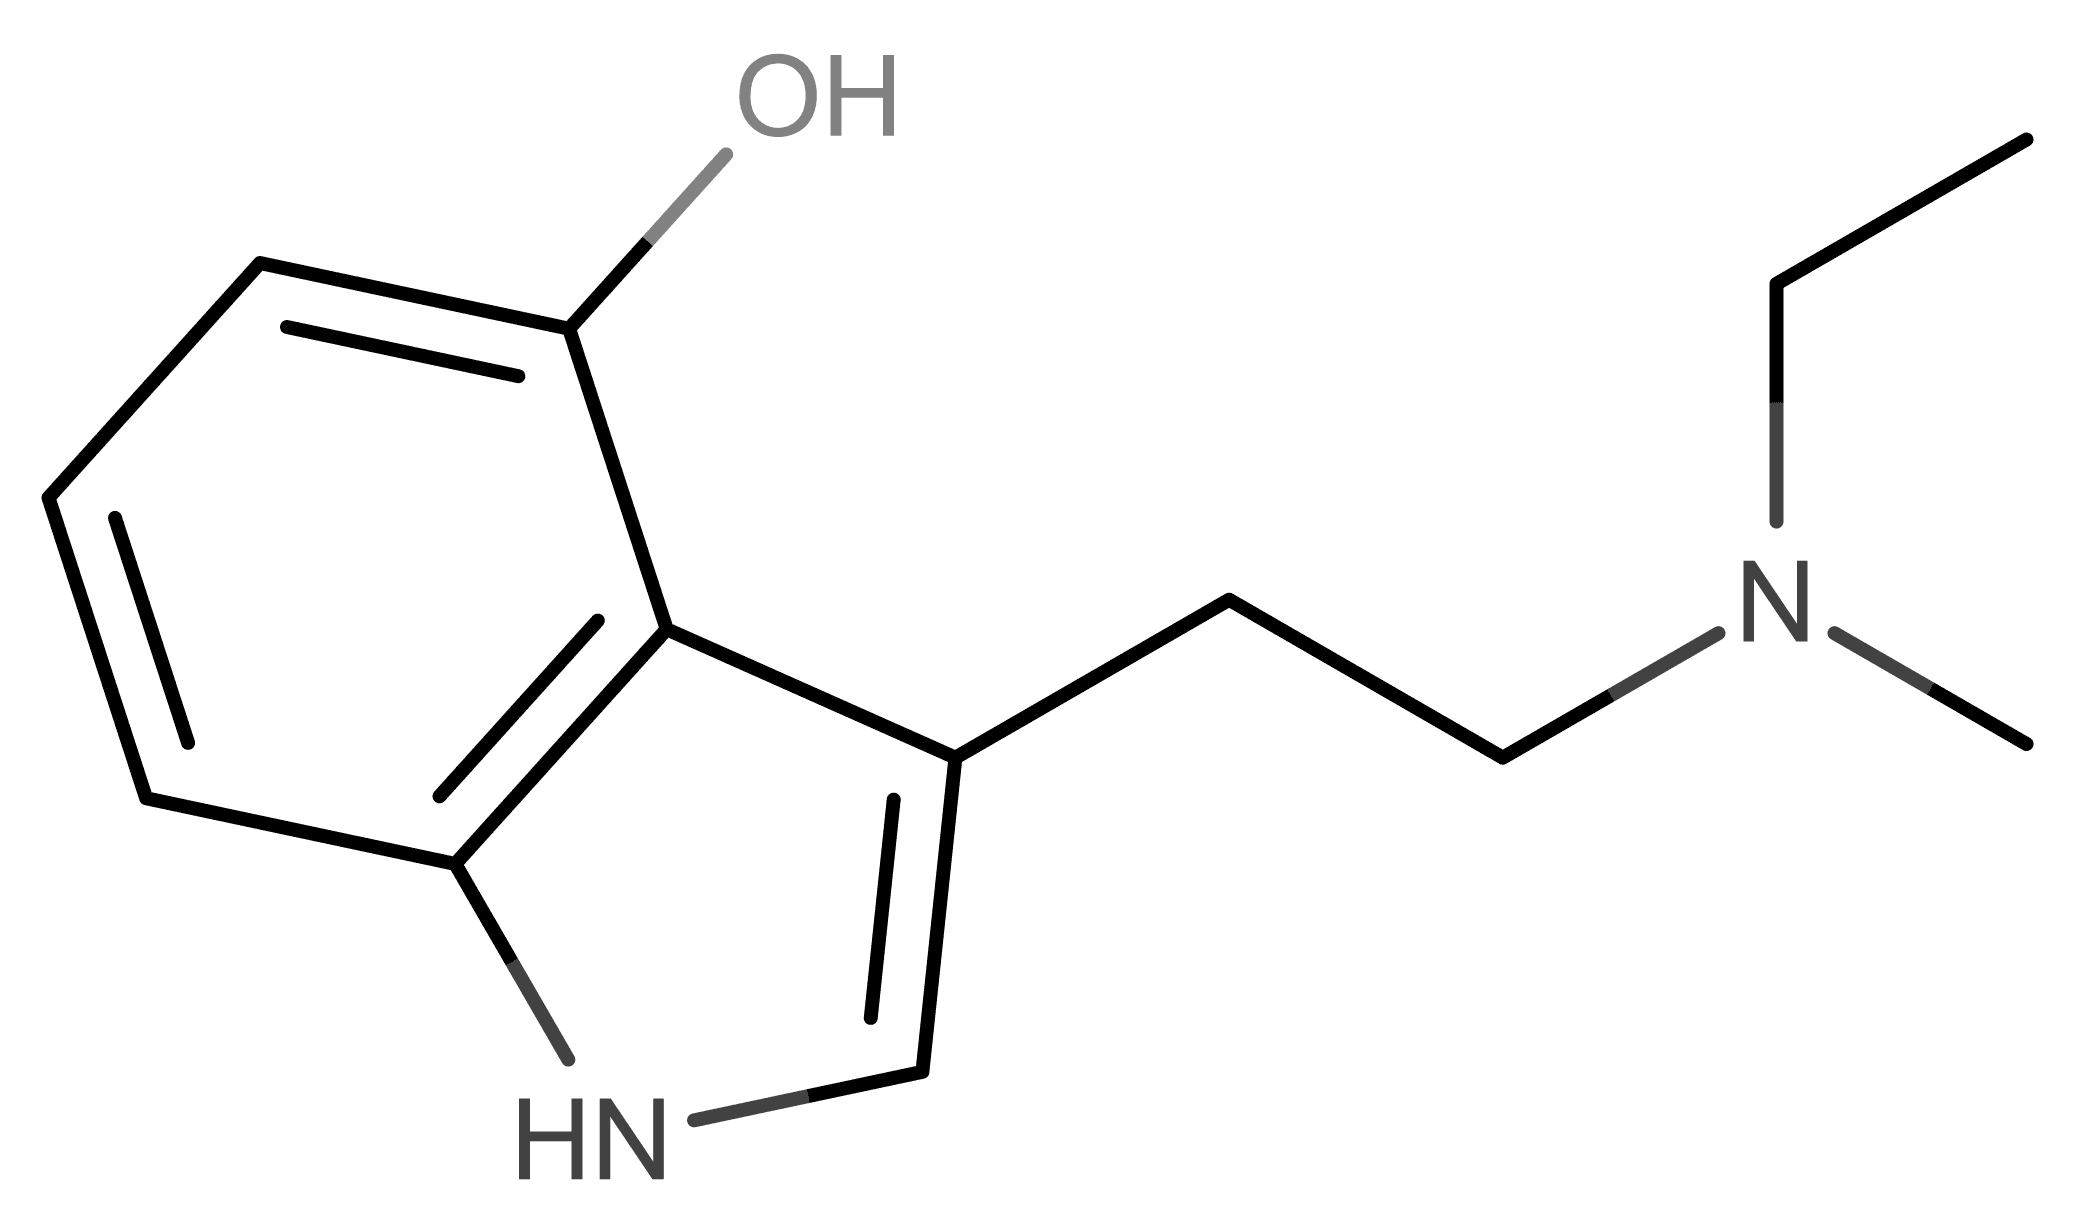 4-HO-MET molecular scheme